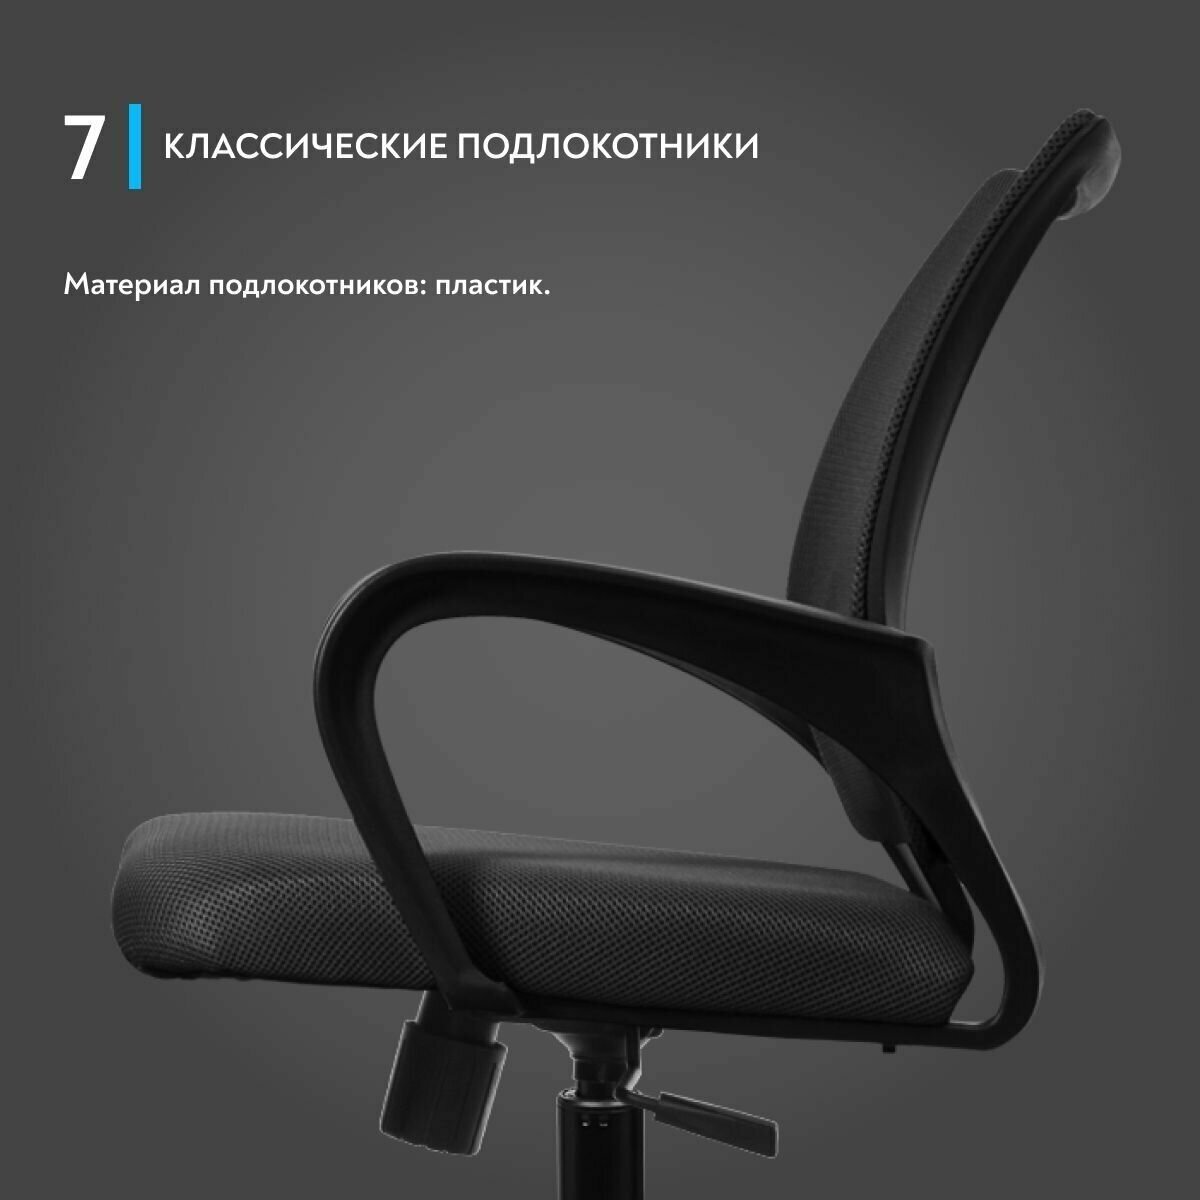 Компьютерное кресло METTA SU-CS-9/подл106/осн001 офисное